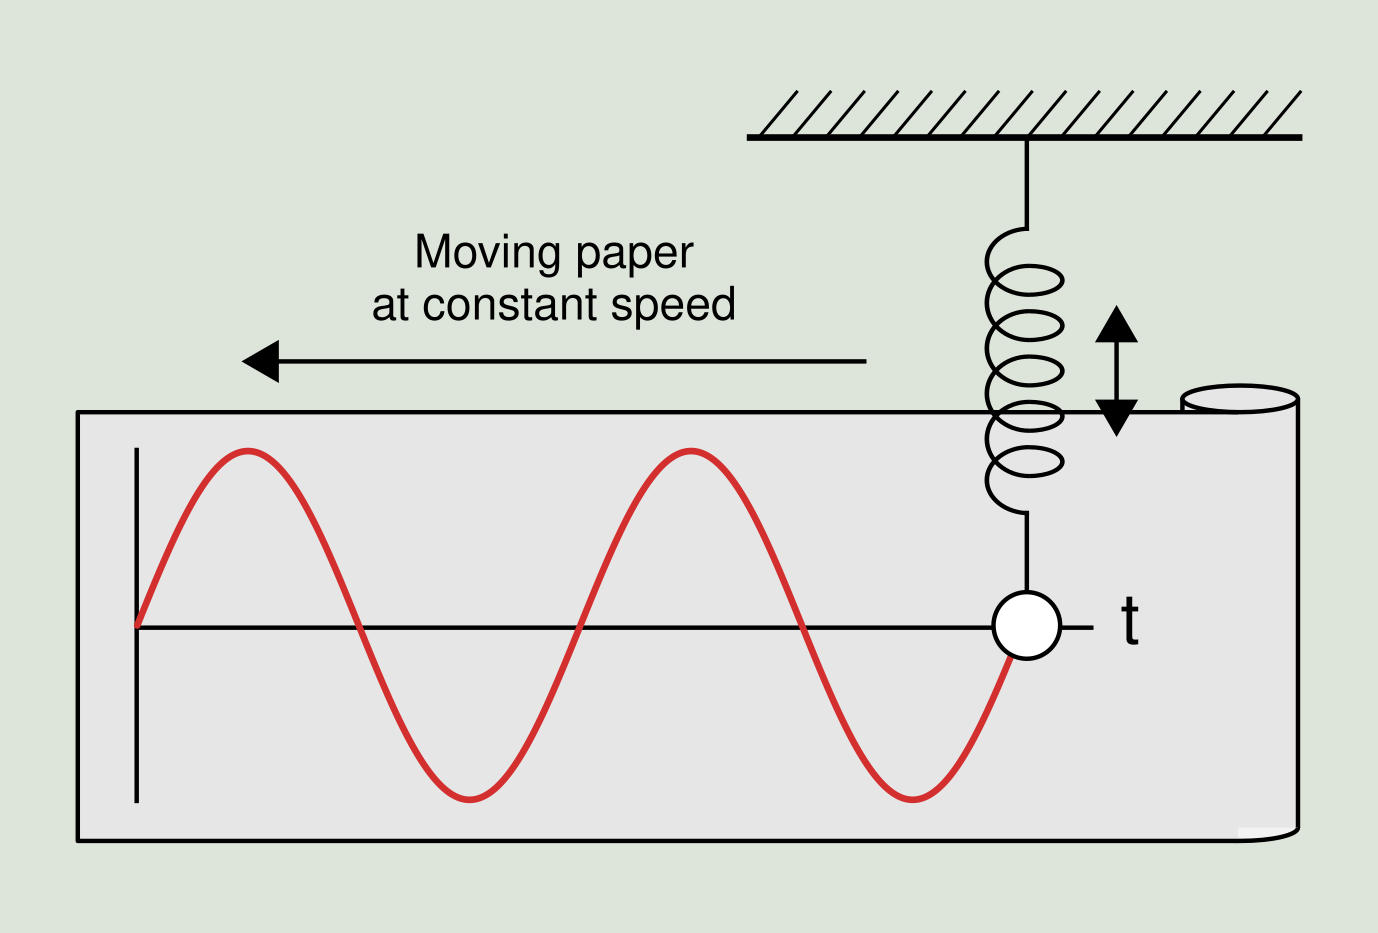 Figure 2.2: Simple harmonic motion